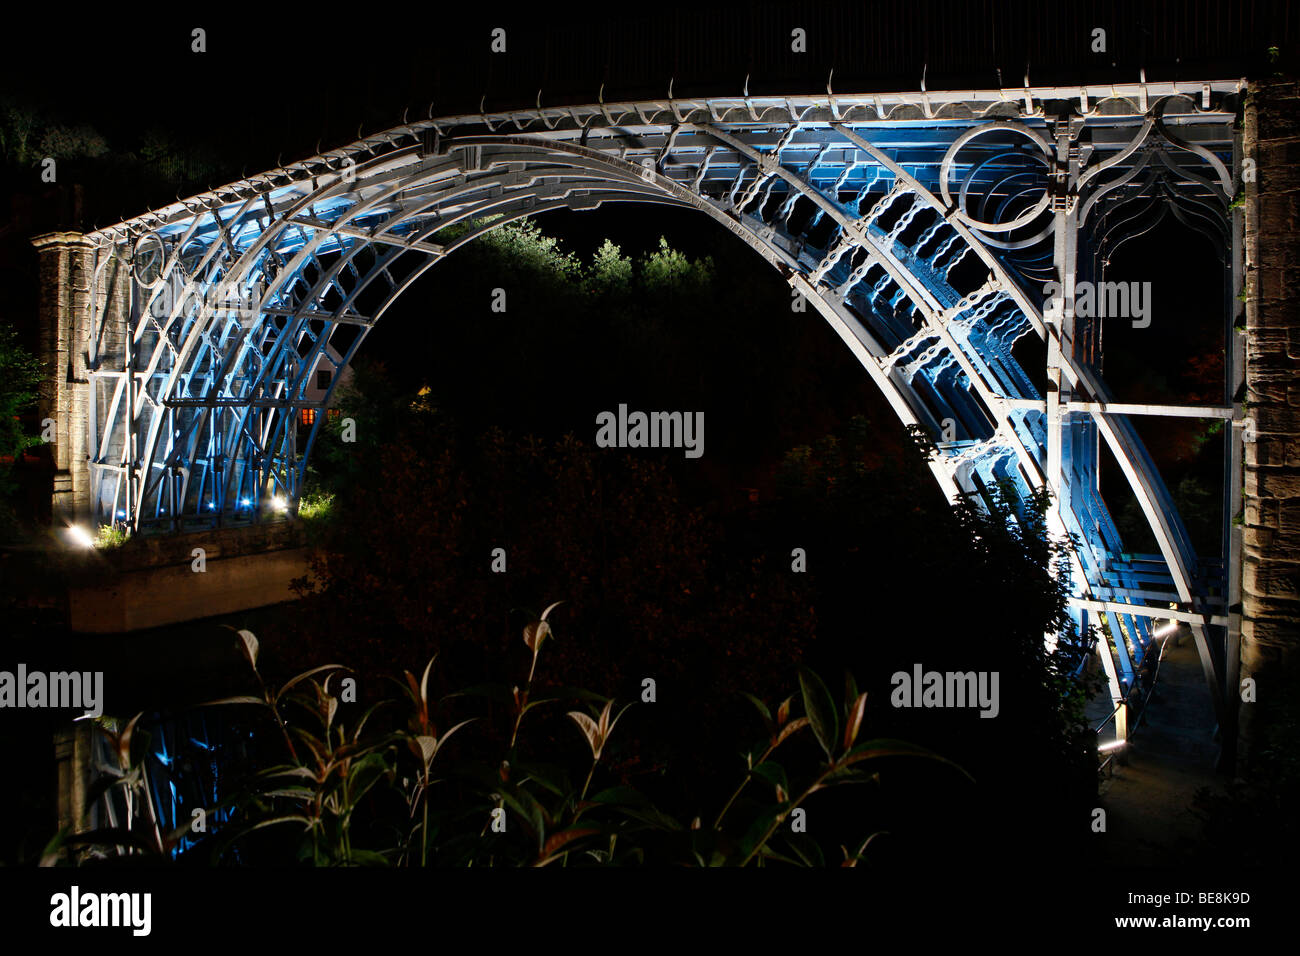 Die eiserne Brücke beleuchtete in Ironbridge, Telford, Shropshire. Stockfoto